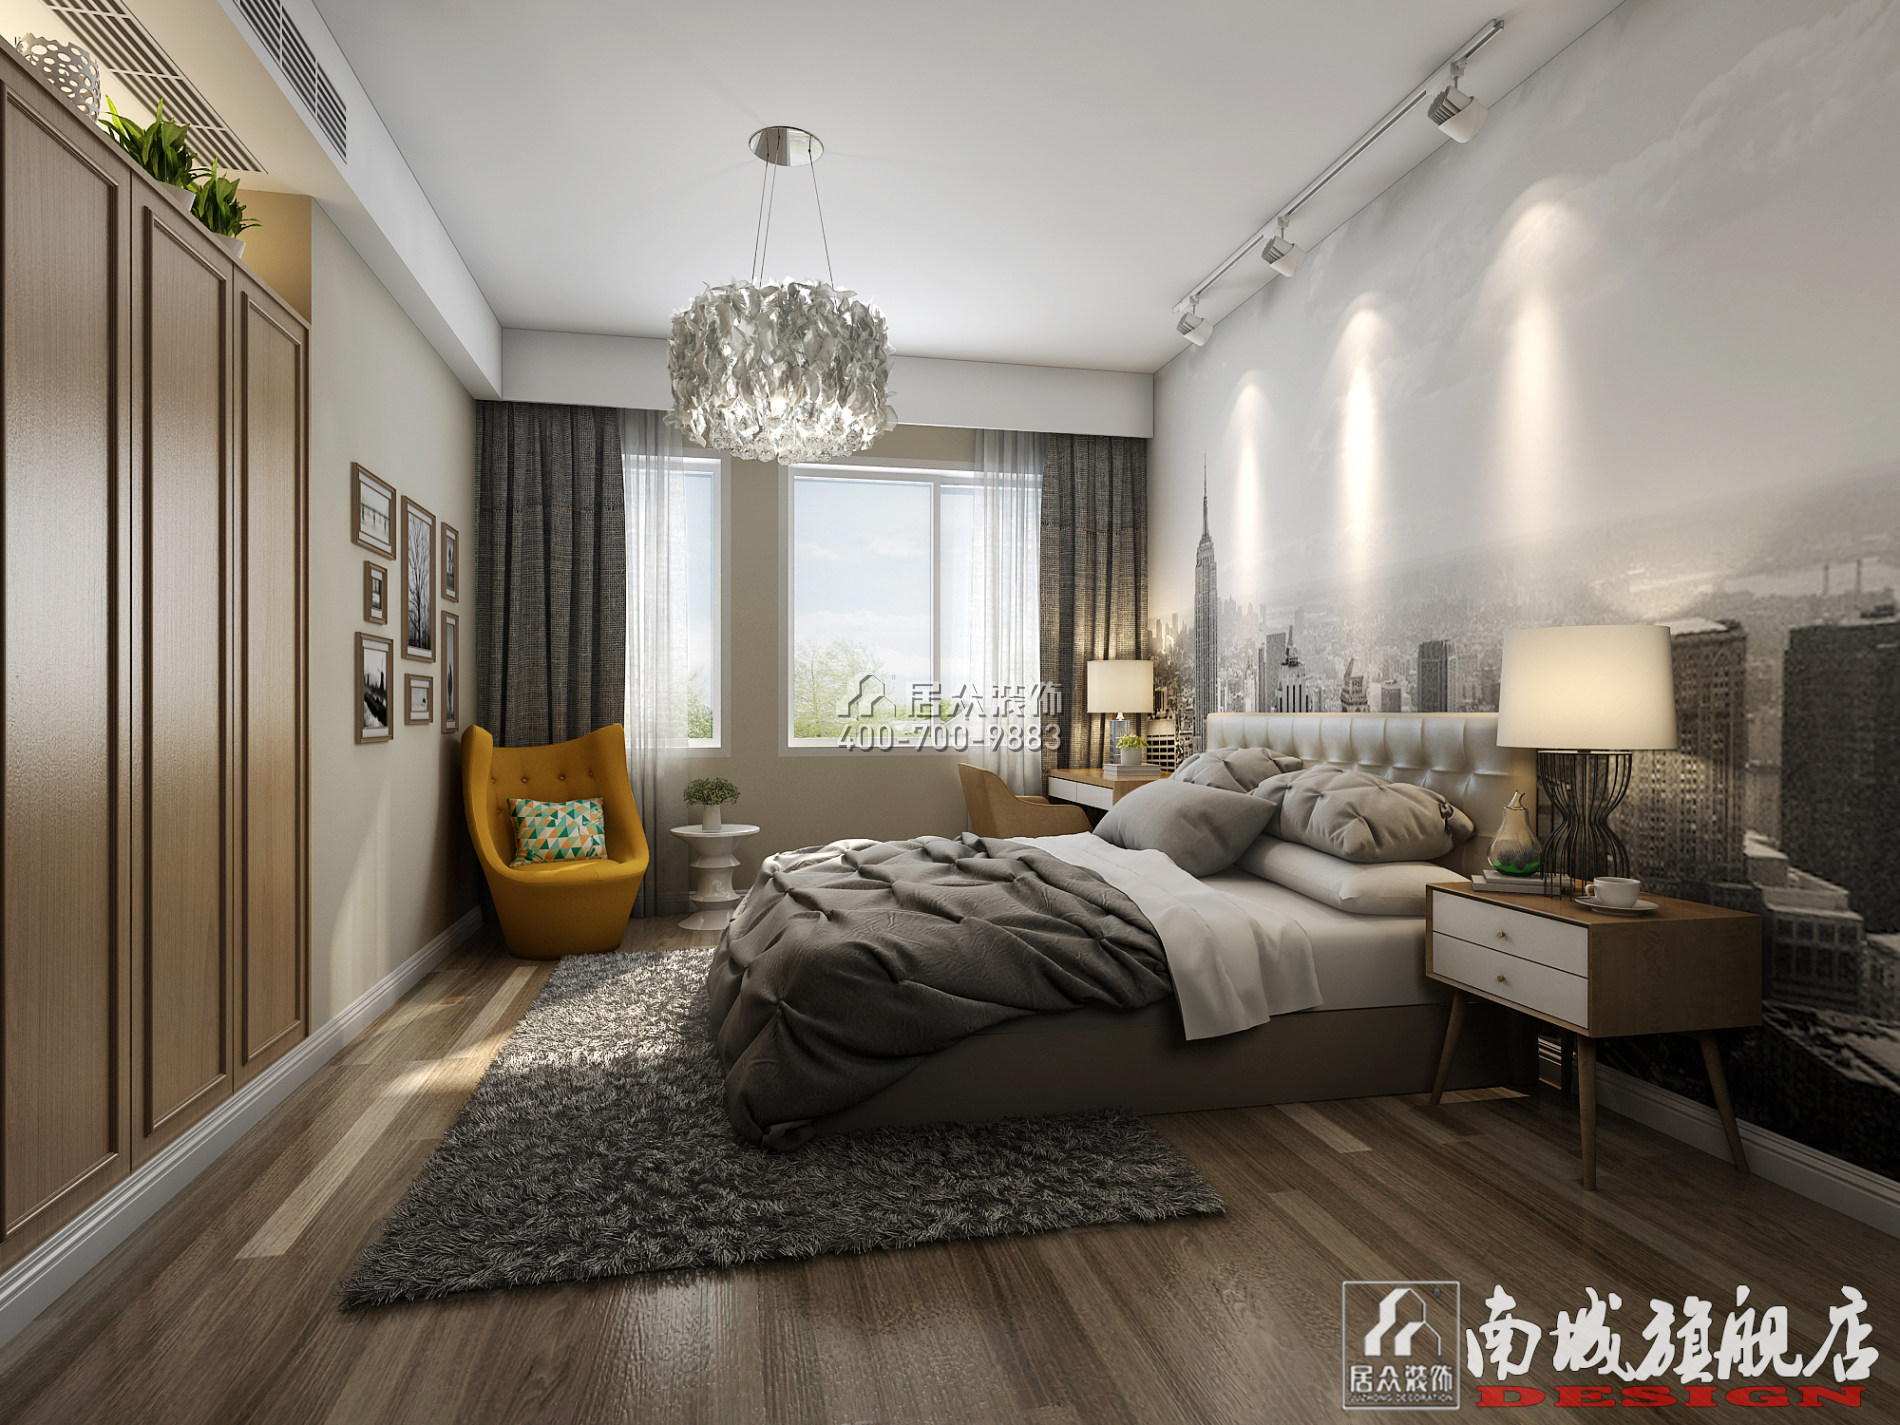 湘江雅颂居143平方米现代简约风格平层户型卧室装修效果图